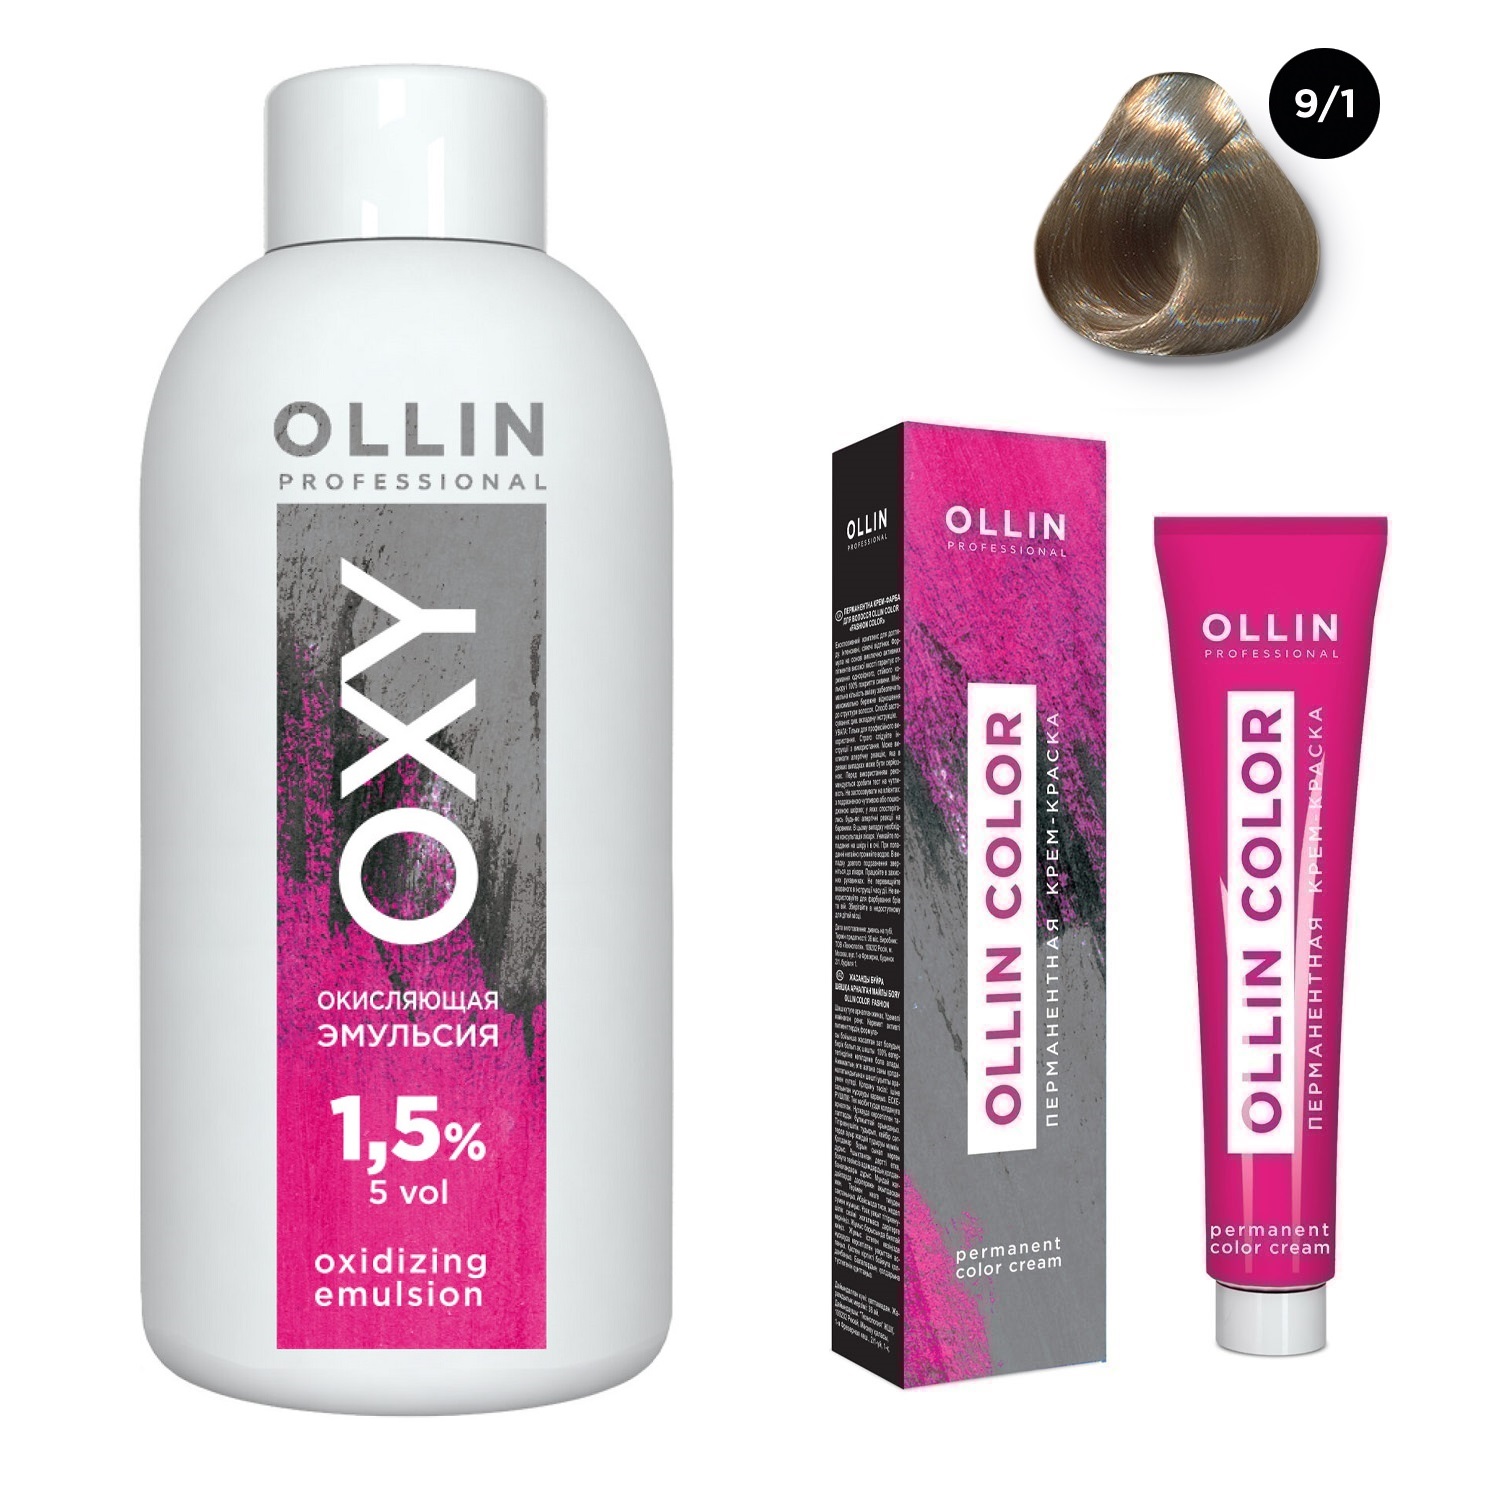 Ollin Professional Набор Перманентная крем-краска для волос Ollin Color оттенок 9/1 блондин пепельный 100 мл + Окисляющая эмульсия Oxy 1,5% 150 мл (Ollin Professional, Ollin Color) цена и фото